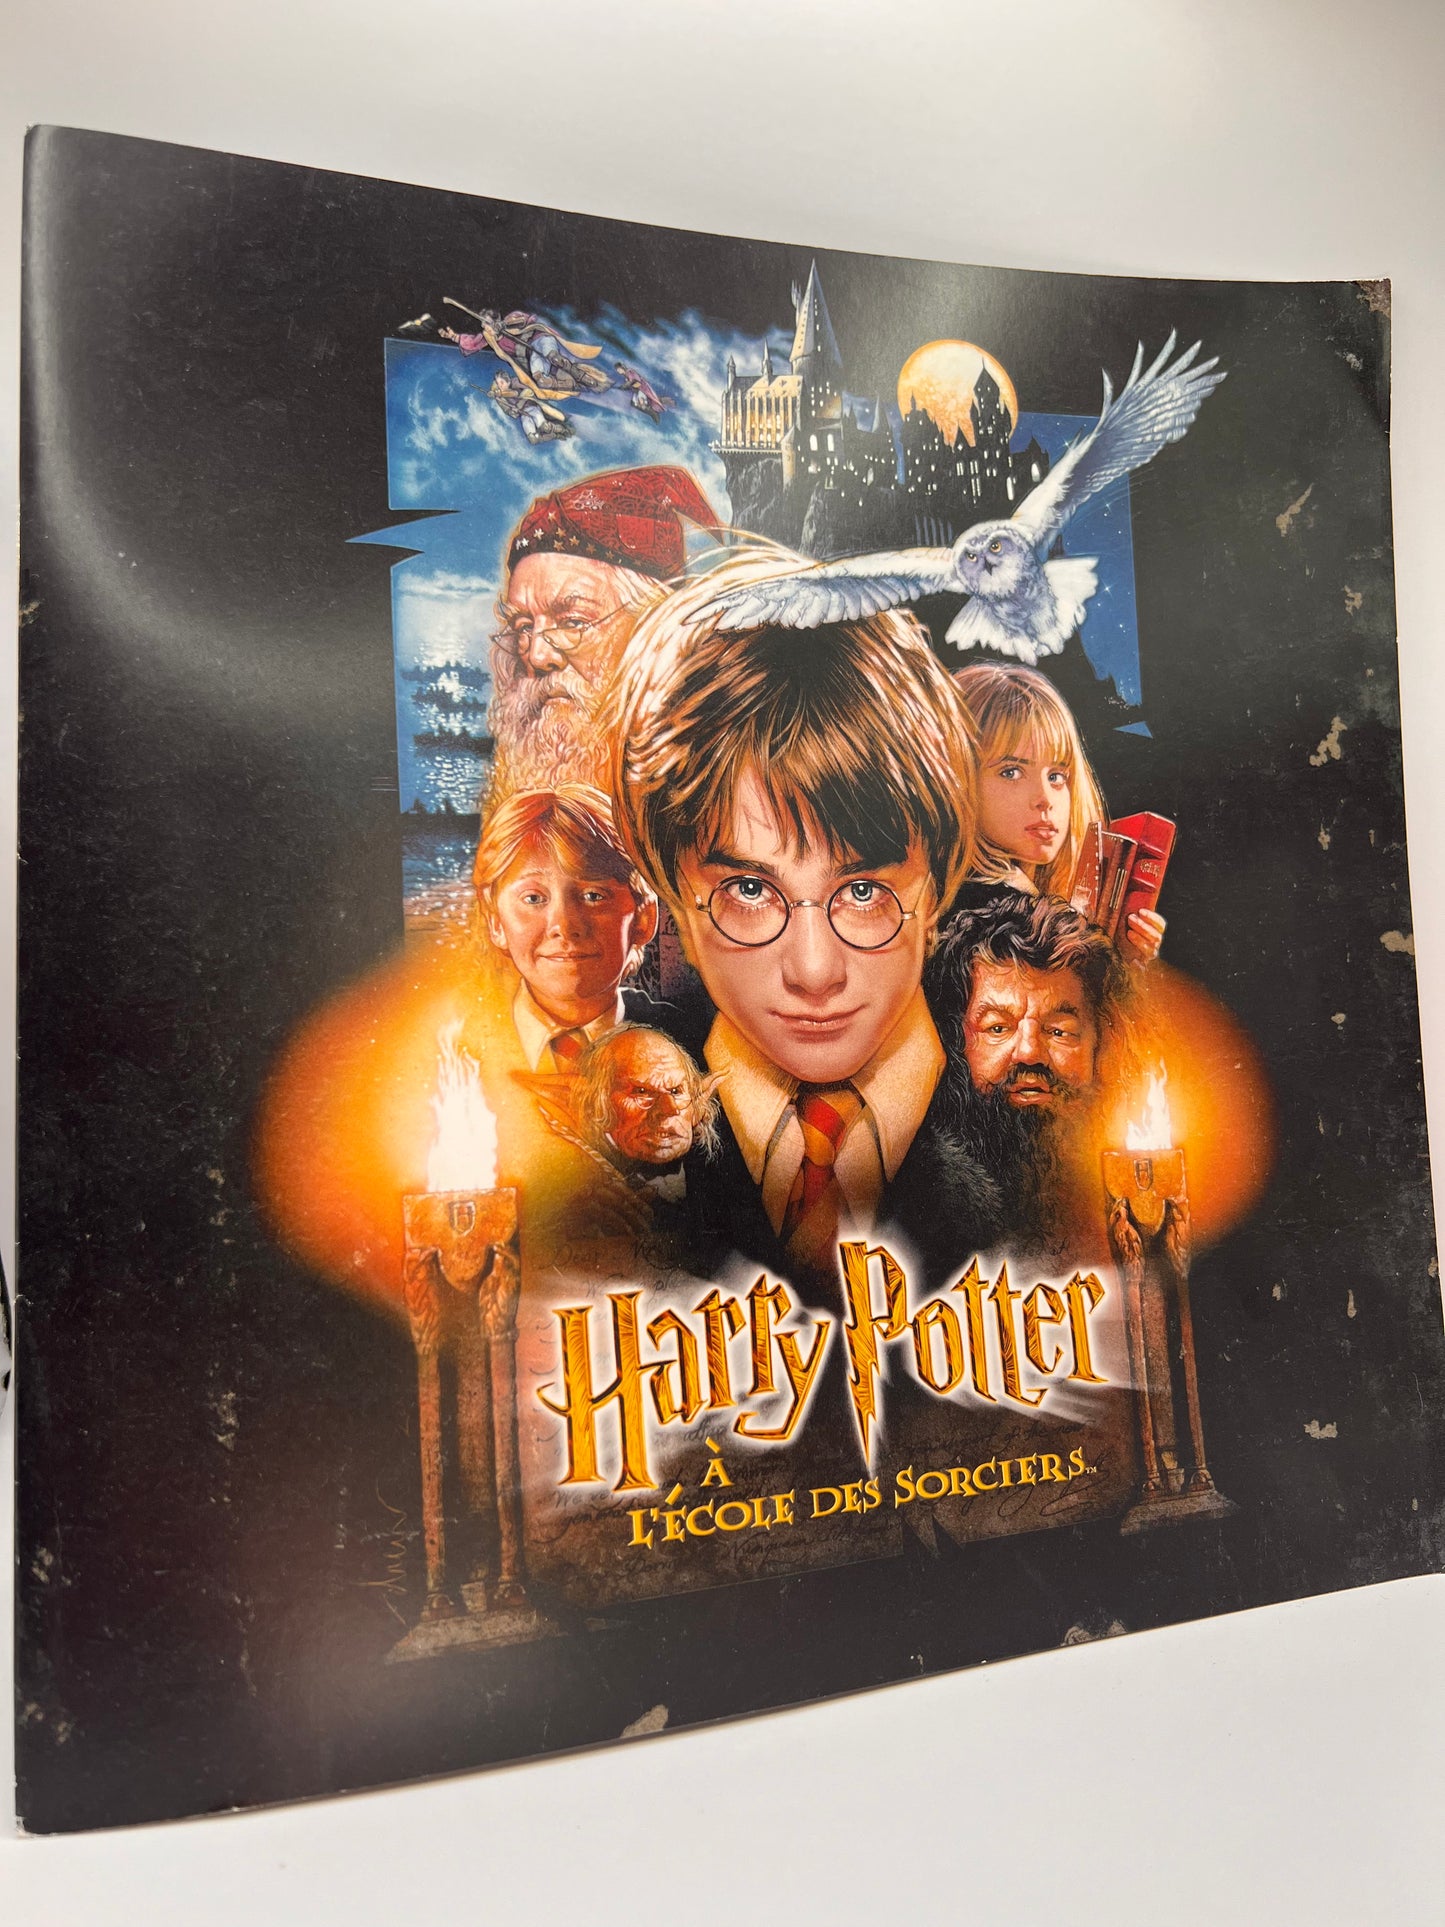 Harry Potter A L'Ecole des Sorciers in Concert Souvenir Booklet